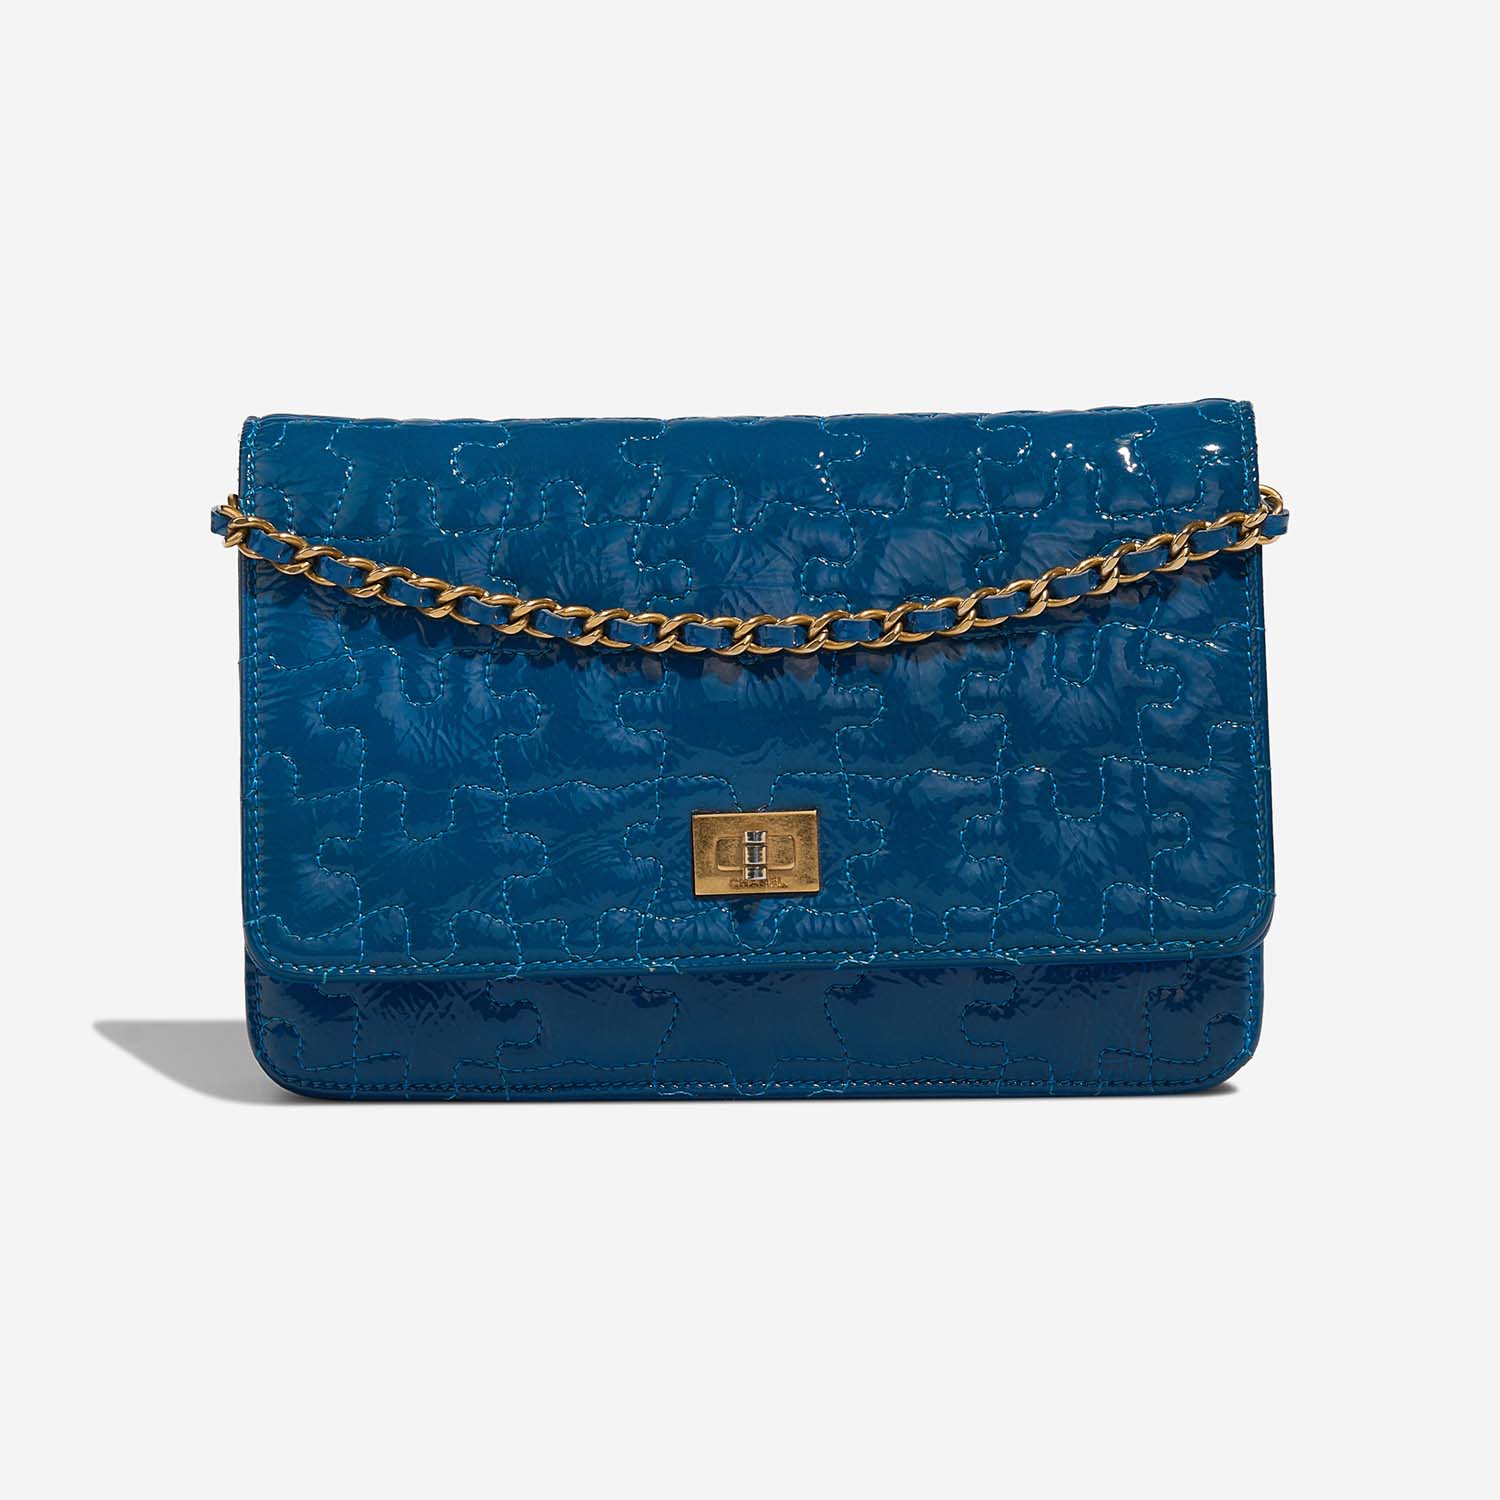 Chanel 255 WOC Blue Front S | Verkaufen Sie Ihre Designer-Tasche auf Saclab.com